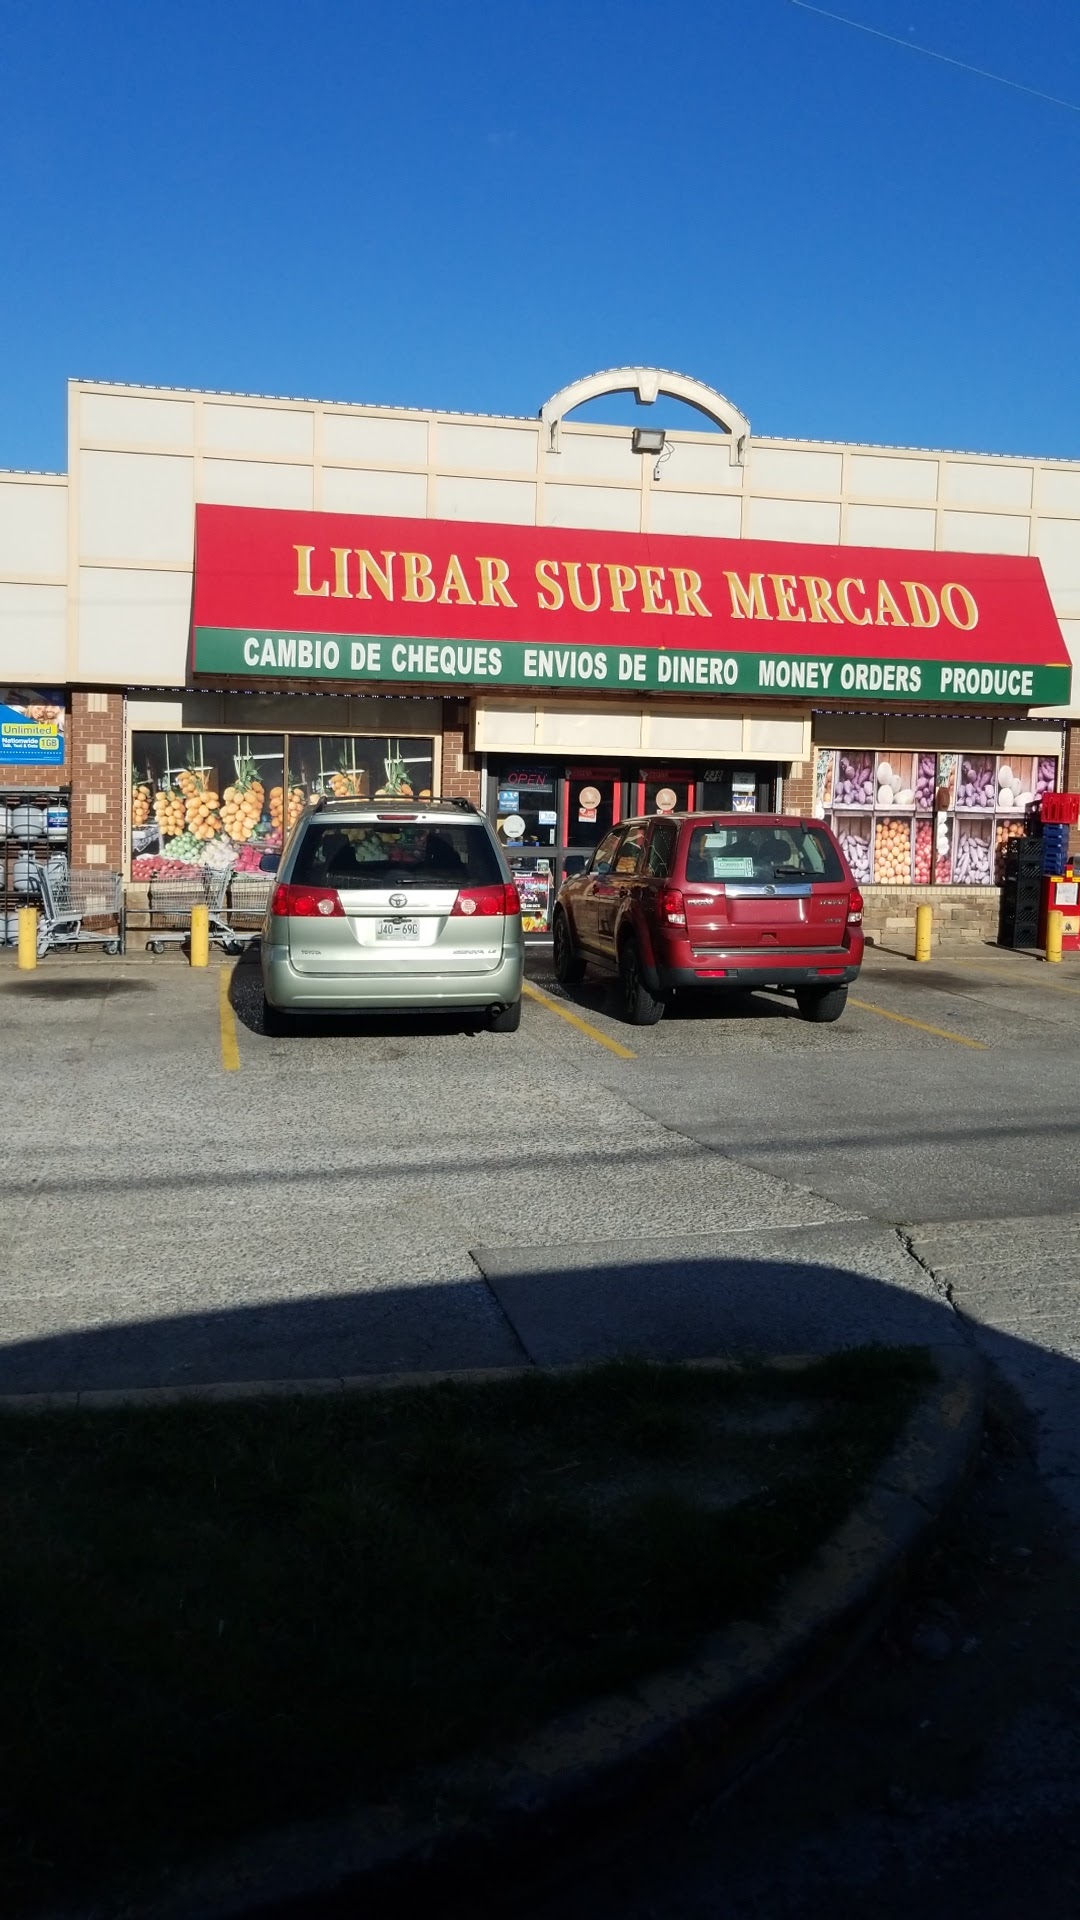 Linbar Super Mercado